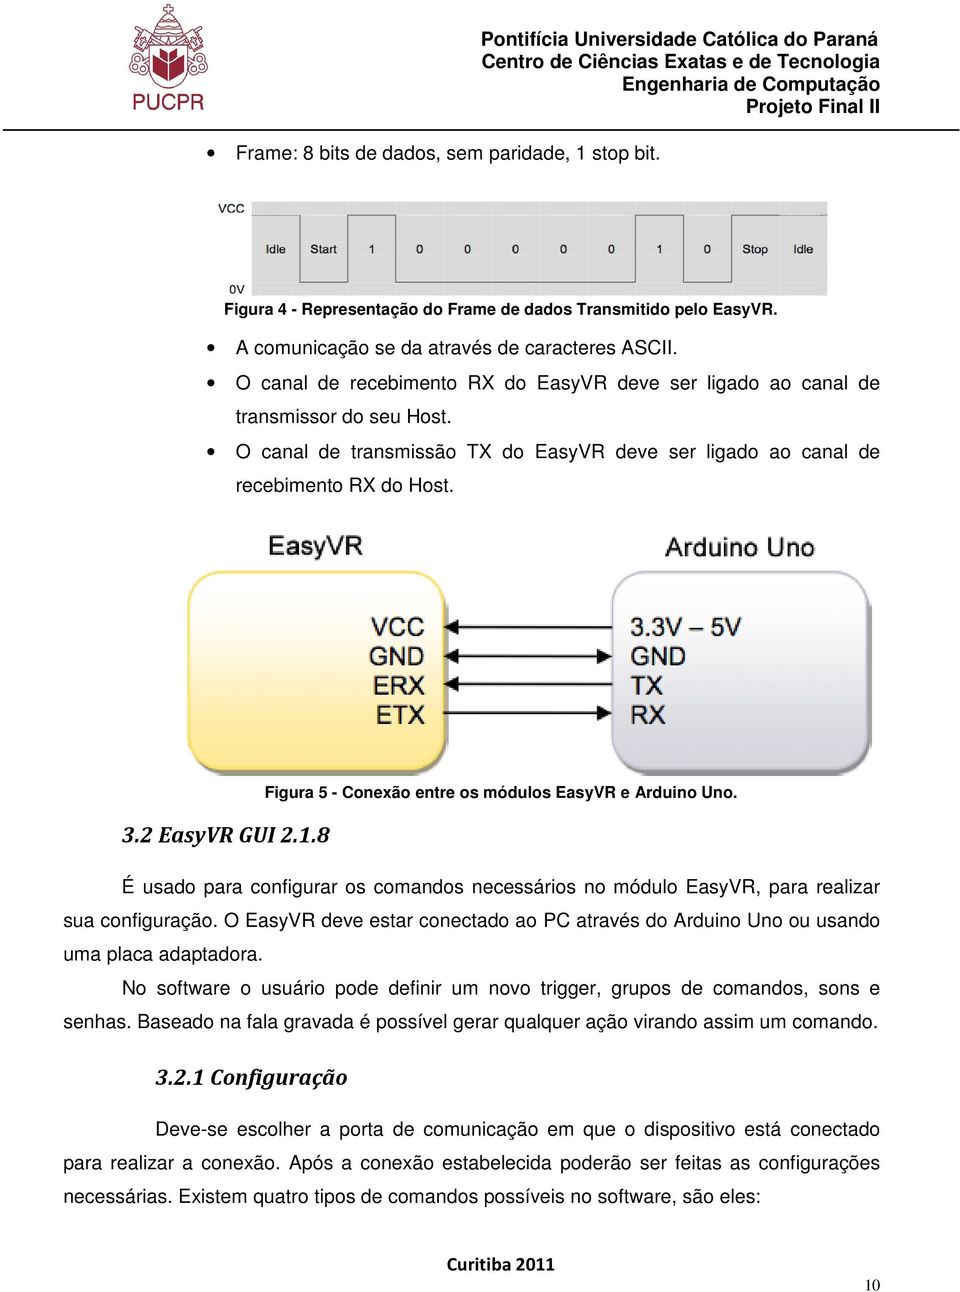 O canal de transmissão TX do EasyVR deve ser ligado ao canal de recebimento RX do Host. 3.2 EasyVR GUI 2.1.8 Figura 5 - Conexão entre os módulos EasyVR e Arduino Uno.